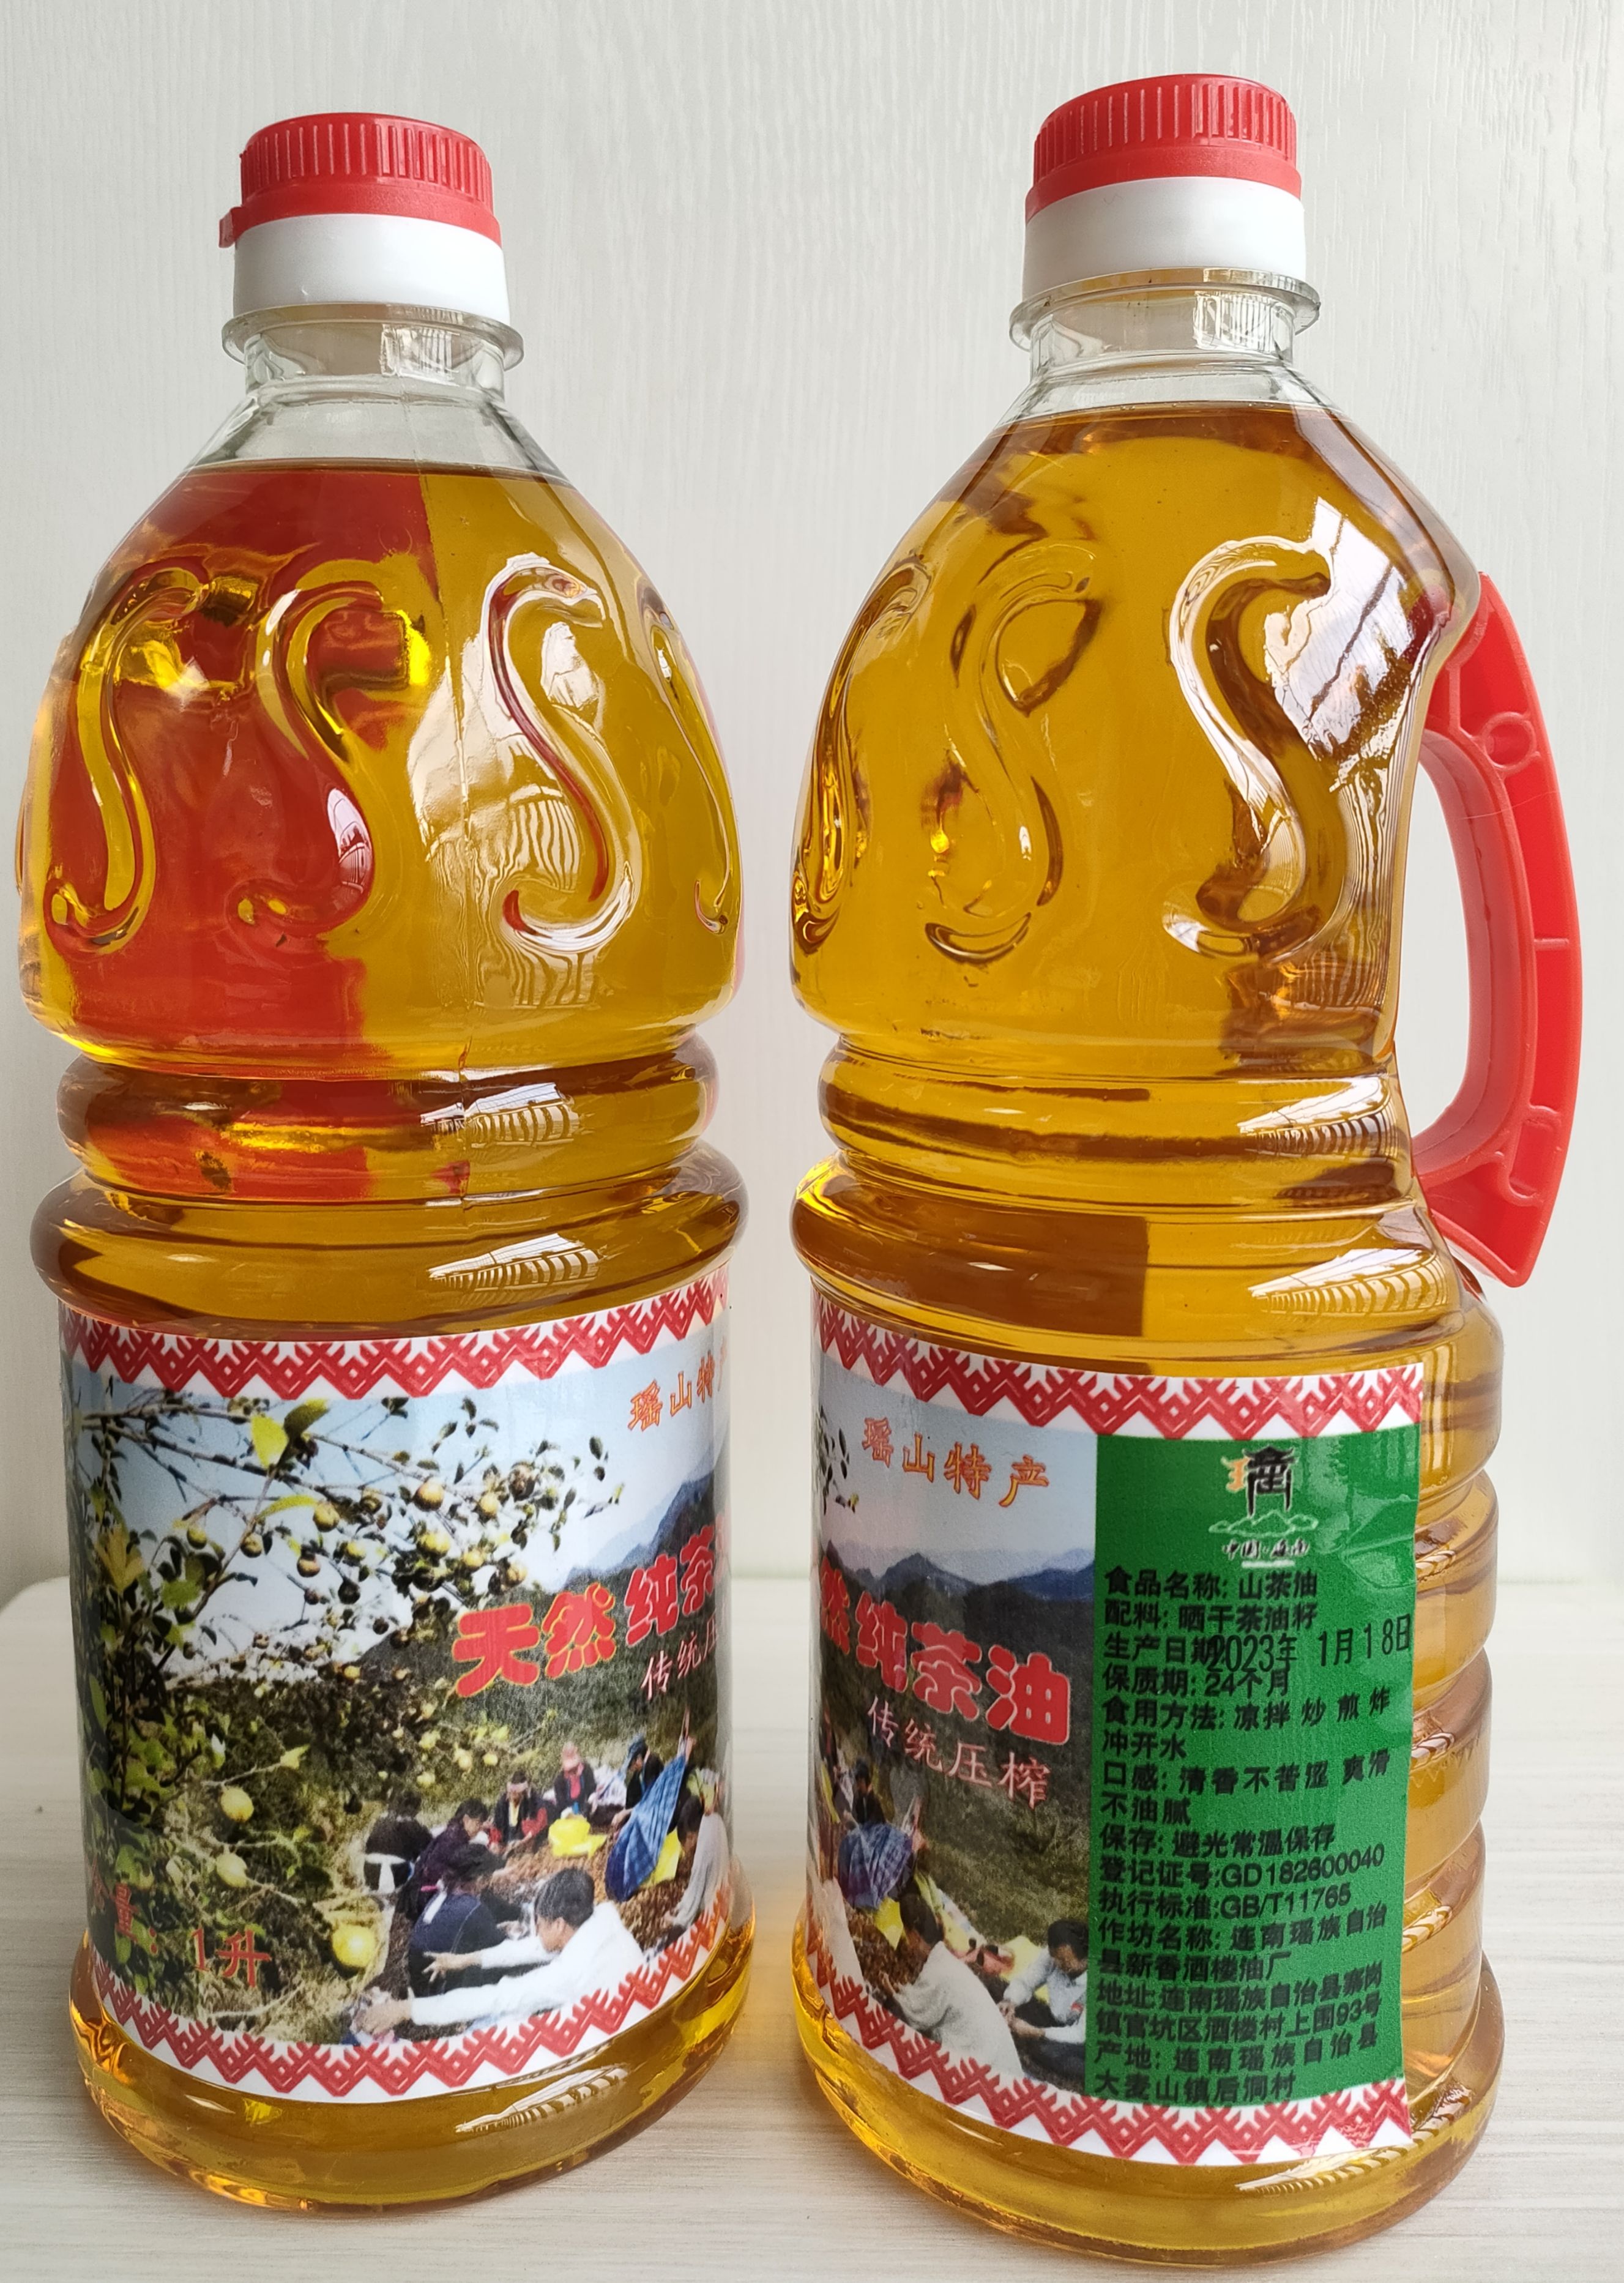 连南瑶族自治县天然纯茶油 山茶油 茶籽油 10瓶起批 包邮 吃油就吃放心油